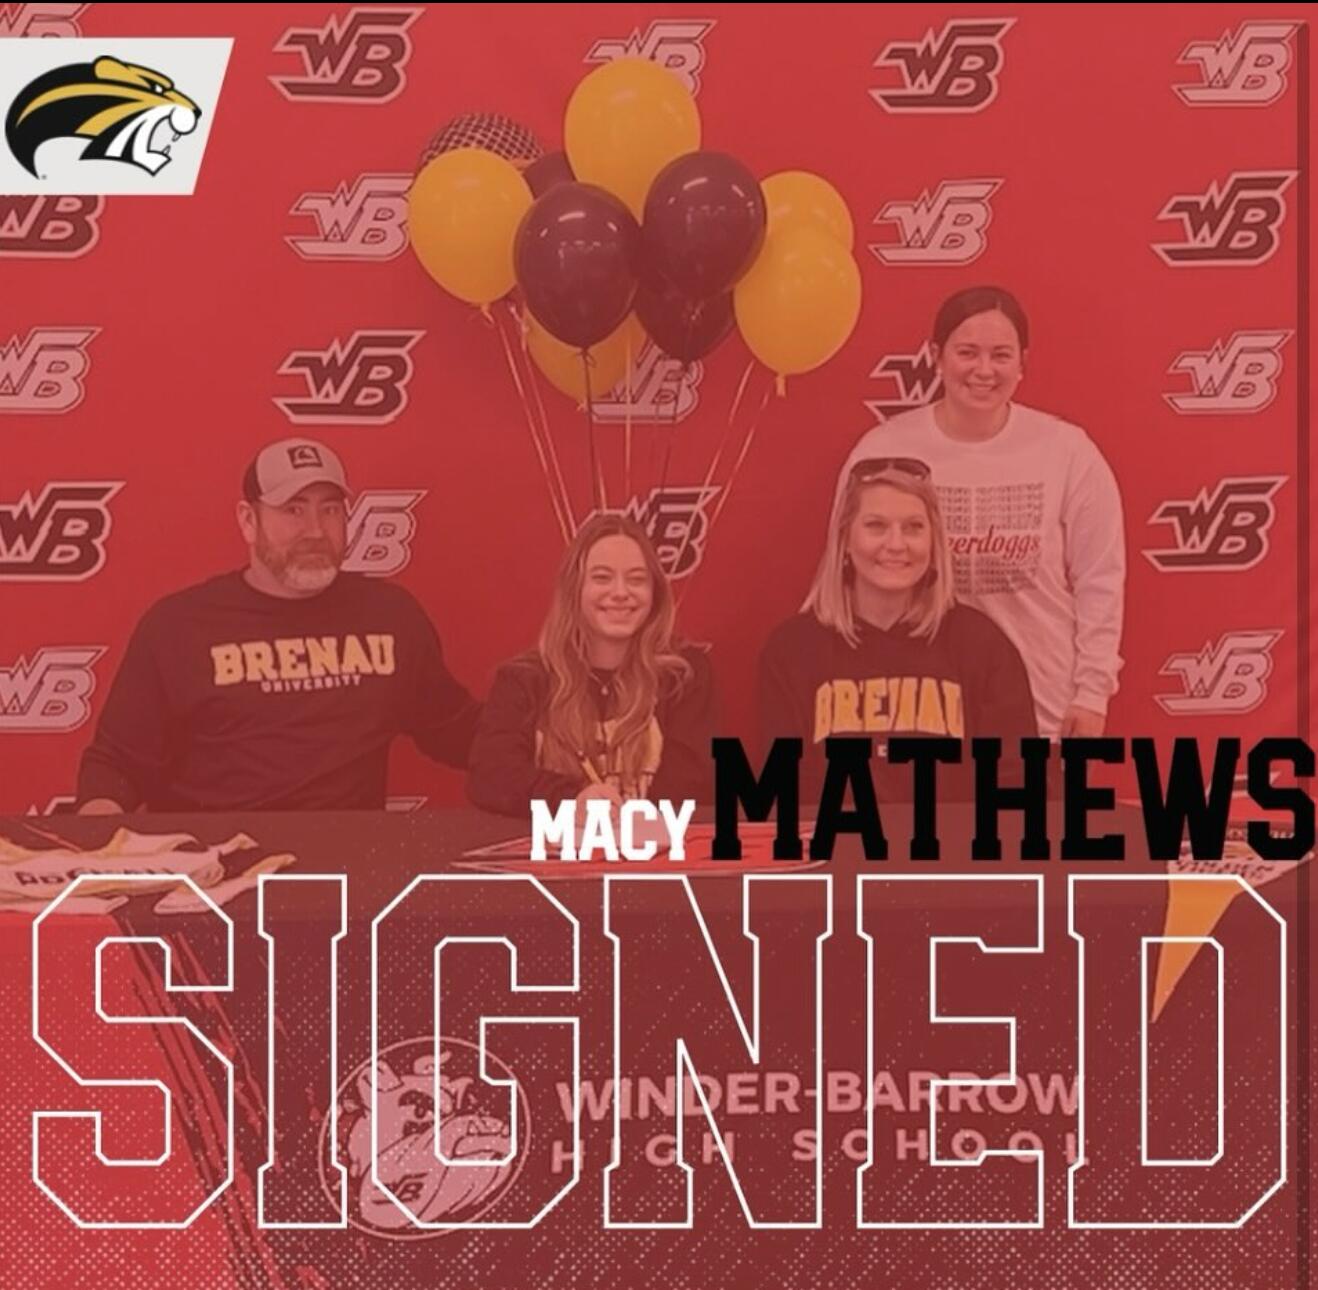 Macy Mathews signing